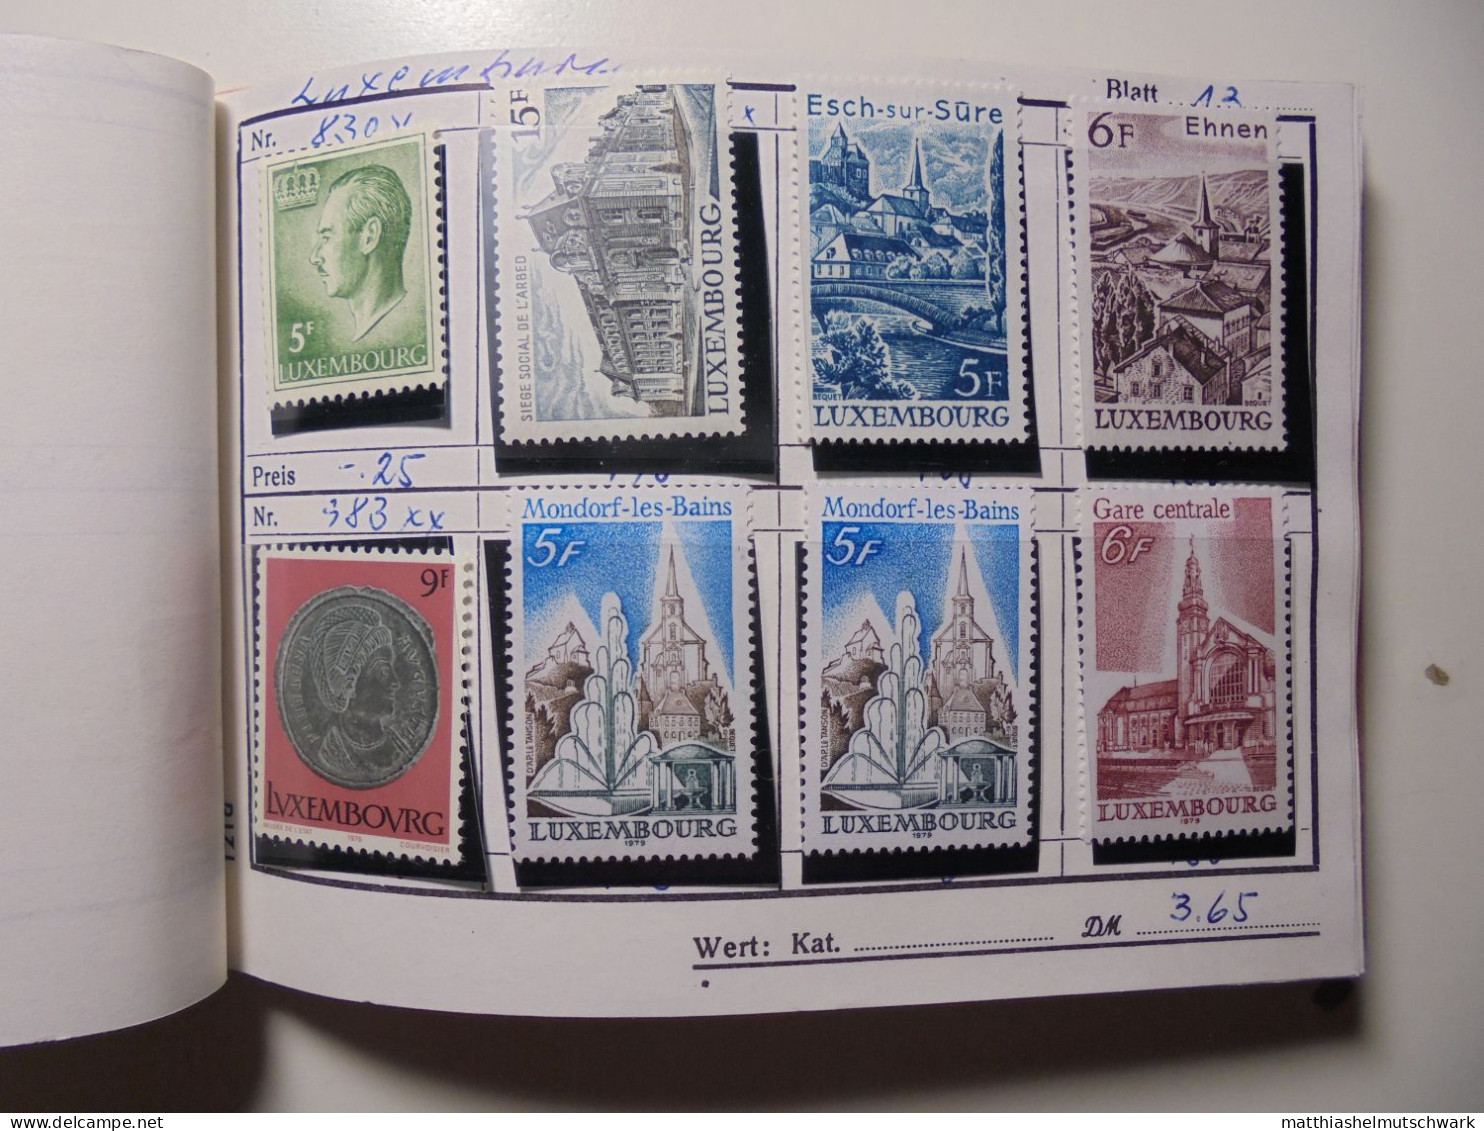 Auswahlheft Nr. 561 25 Blätter 193 Briefmarken xx, x Luxemburg ca. 1877-1981/Mi Nr. 17b-1036 Ca. € 100 S